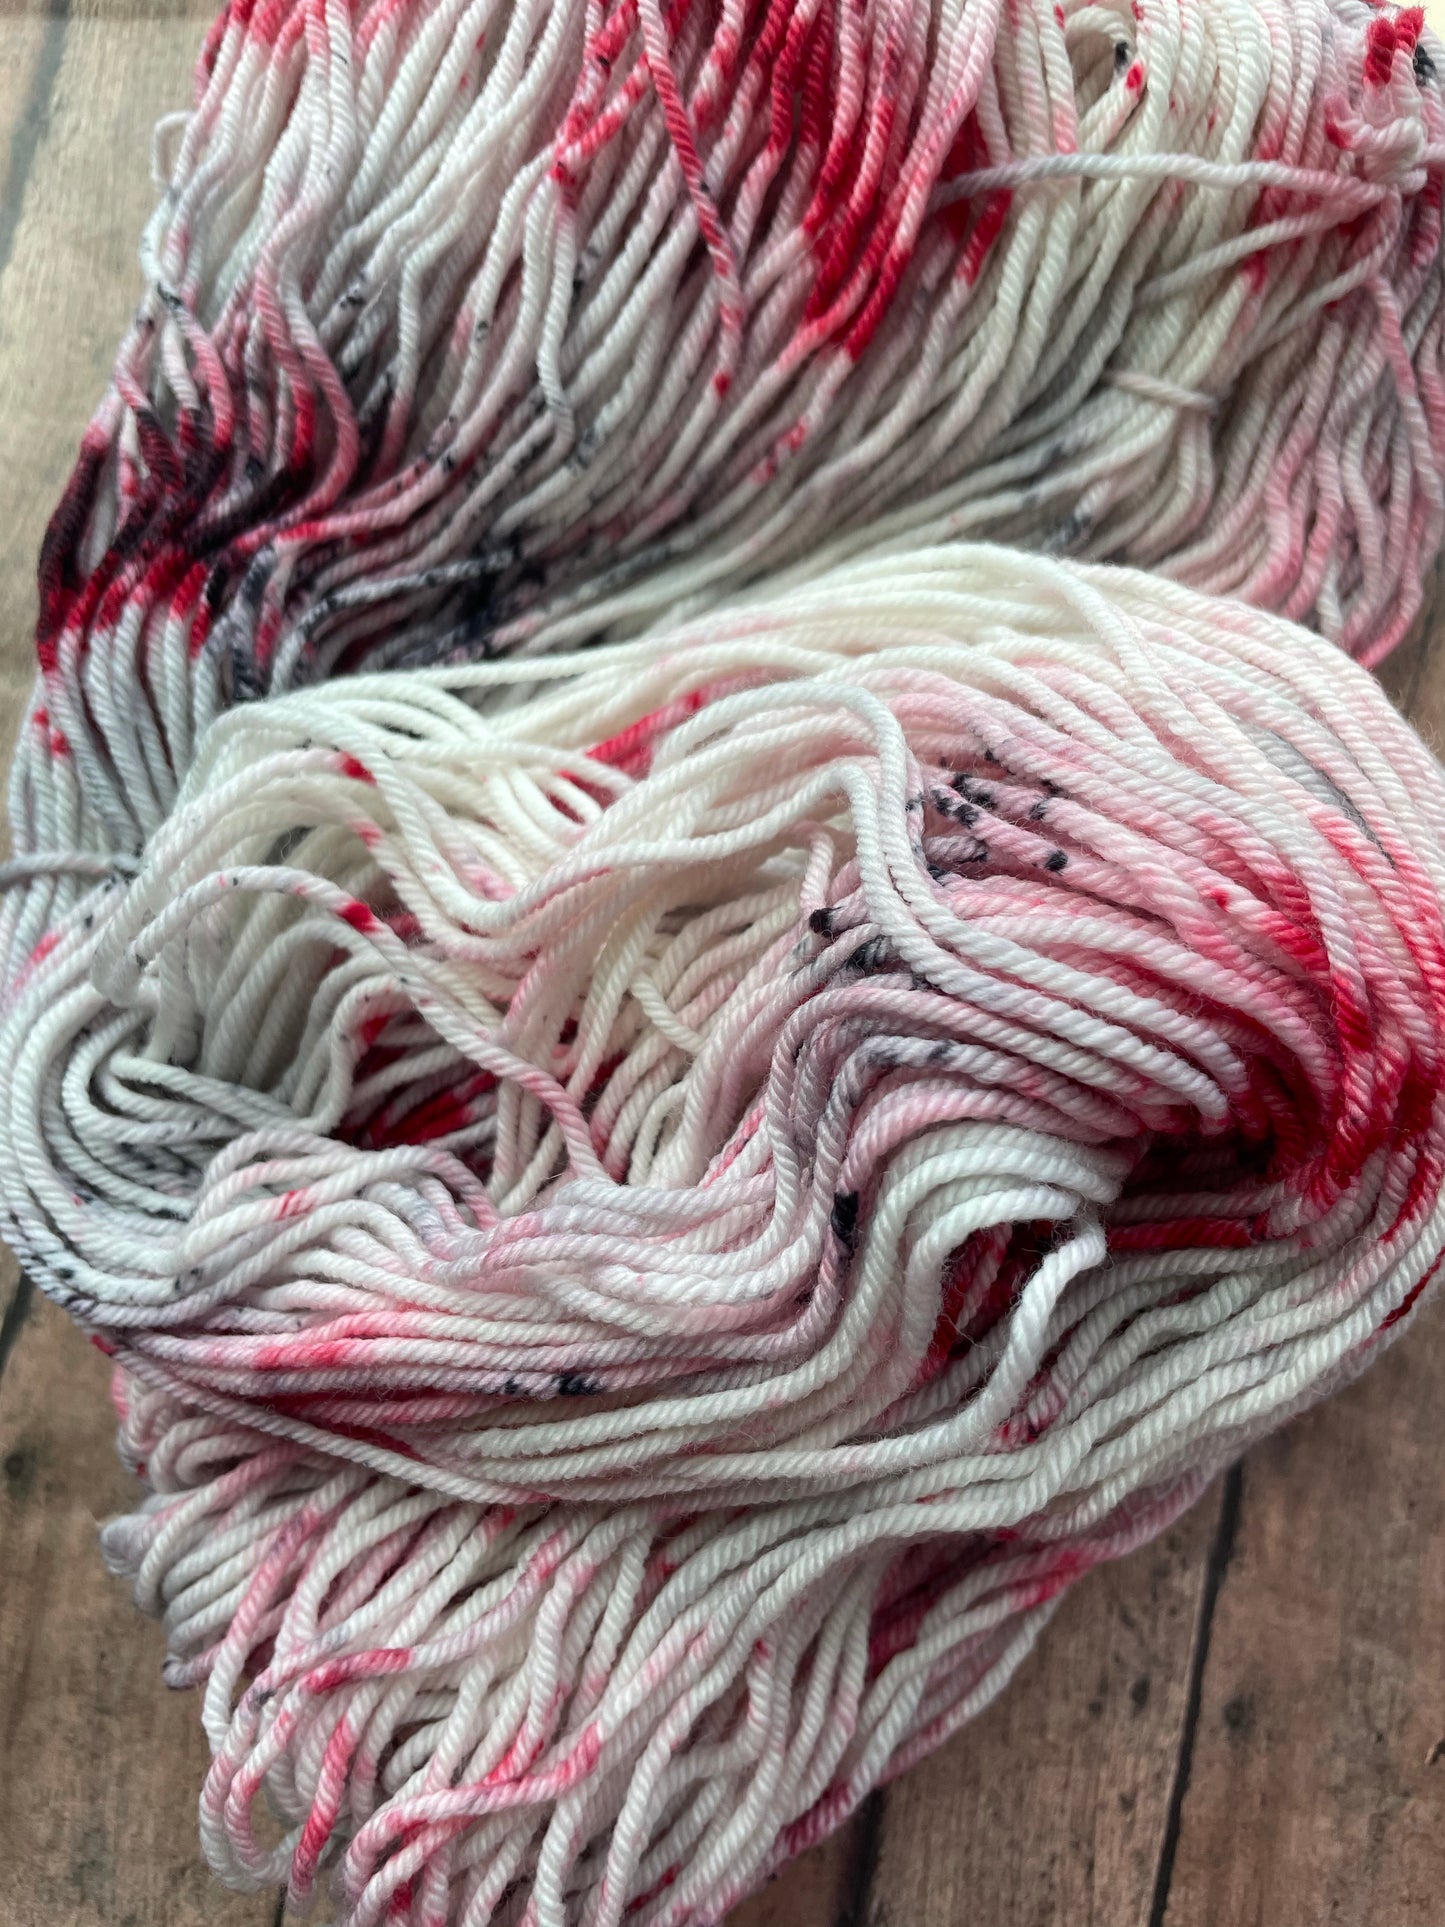 Black Tie Affair - Drizzy DK - hand dyed yarn